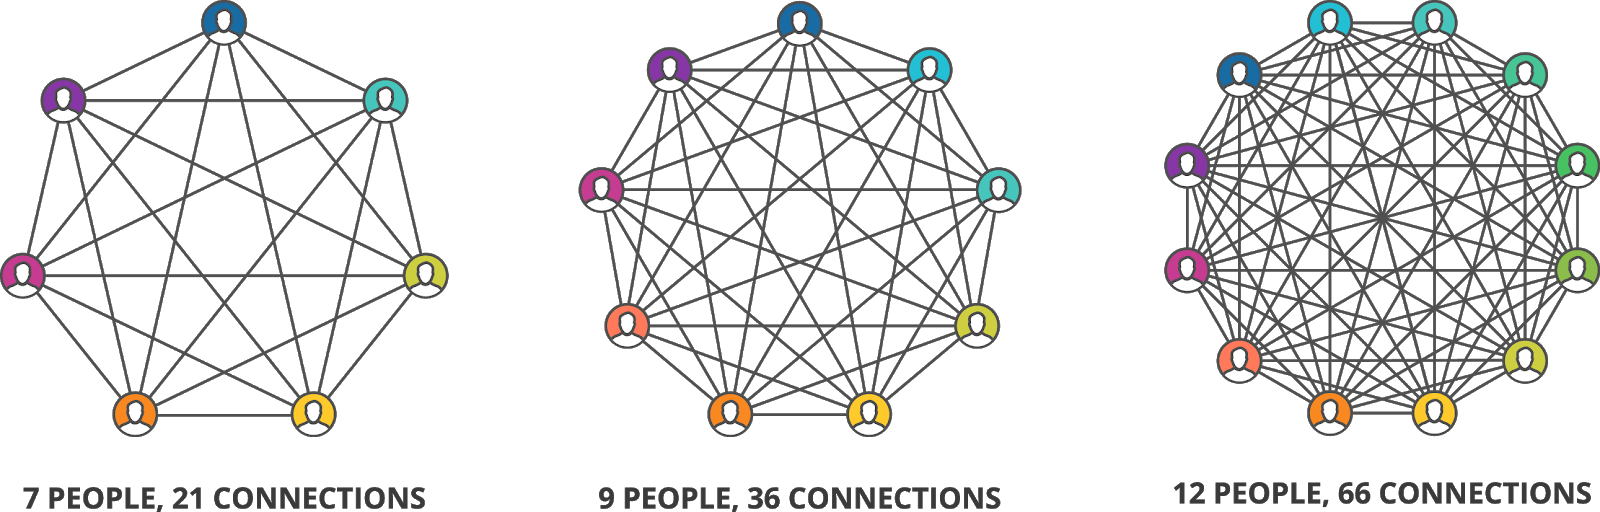 zelforganisatie bij gemeenten ideale teamgrootte